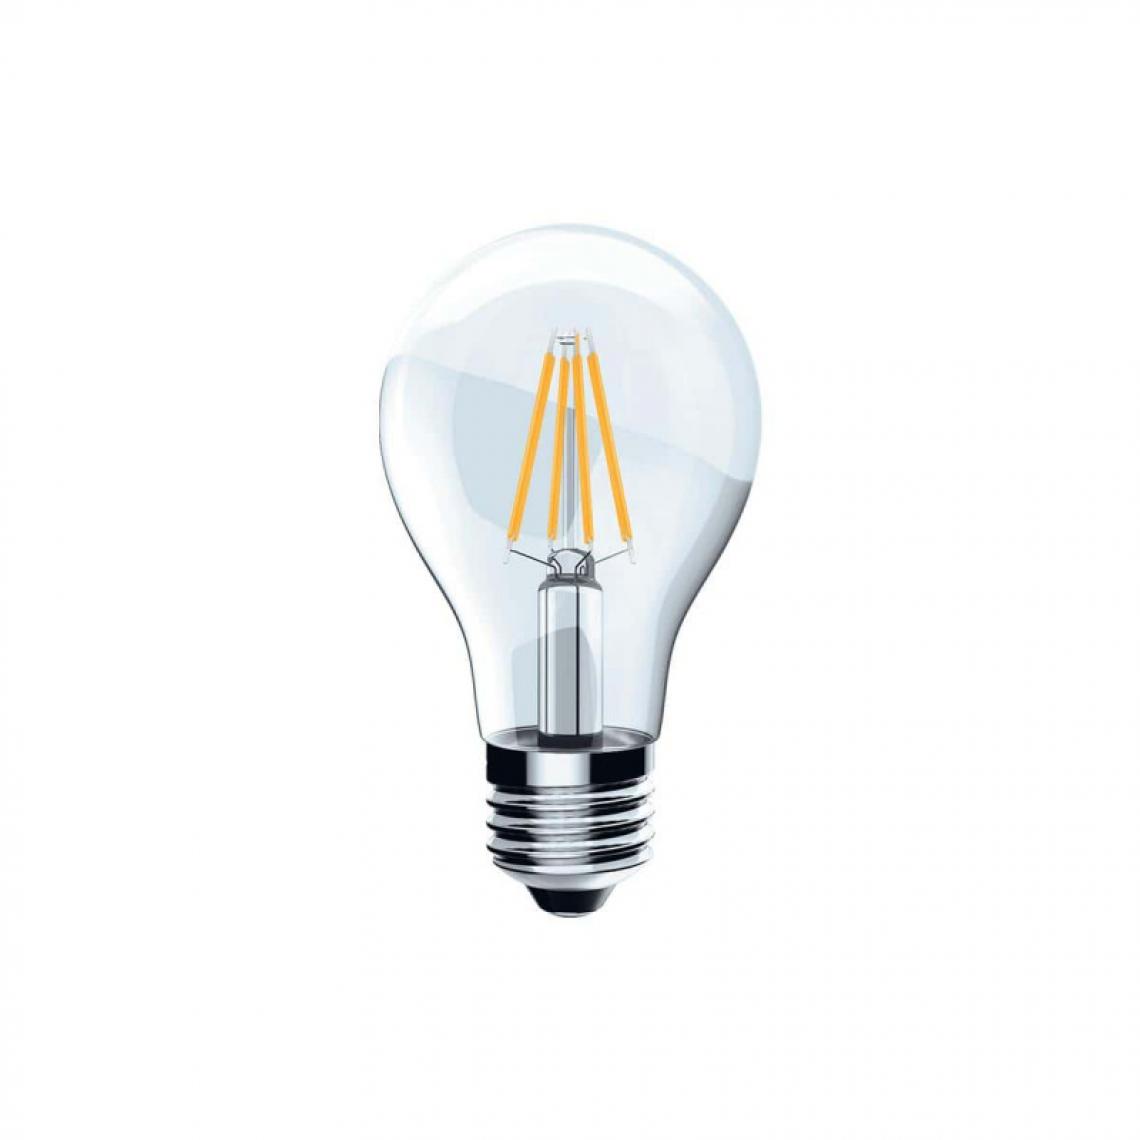 Xxcell - Ampoule LED Filament XXCELL Standard clair - E27 équivalent 60W - Ampoules LED